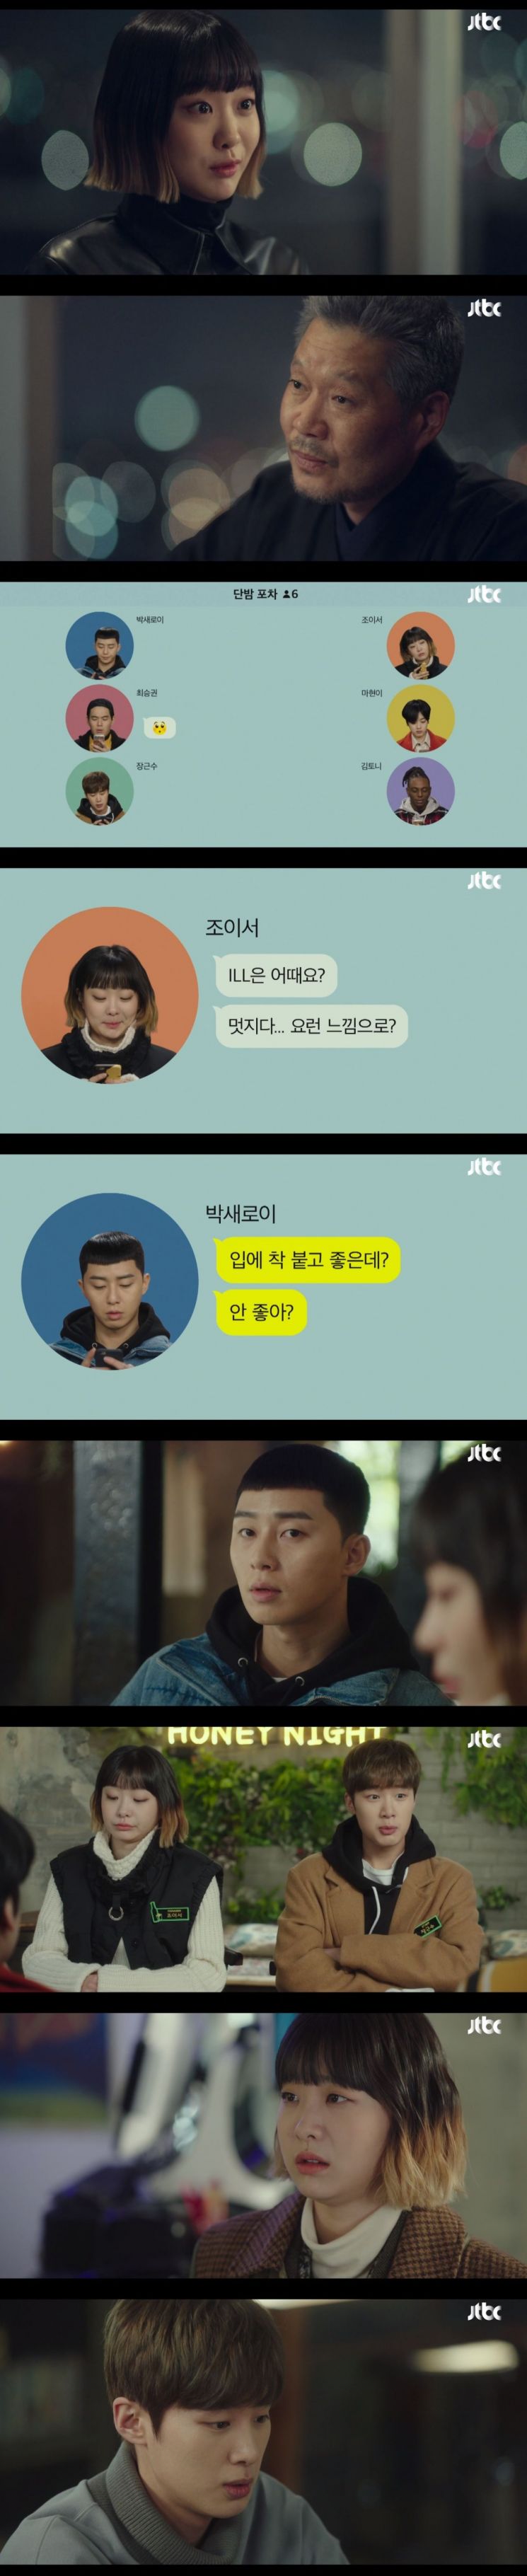 '이태원 클라쓰' 김다미, "다 부숴버릴거야" 안보현 자백 녹취... 시청률 14% 돌파(종합)